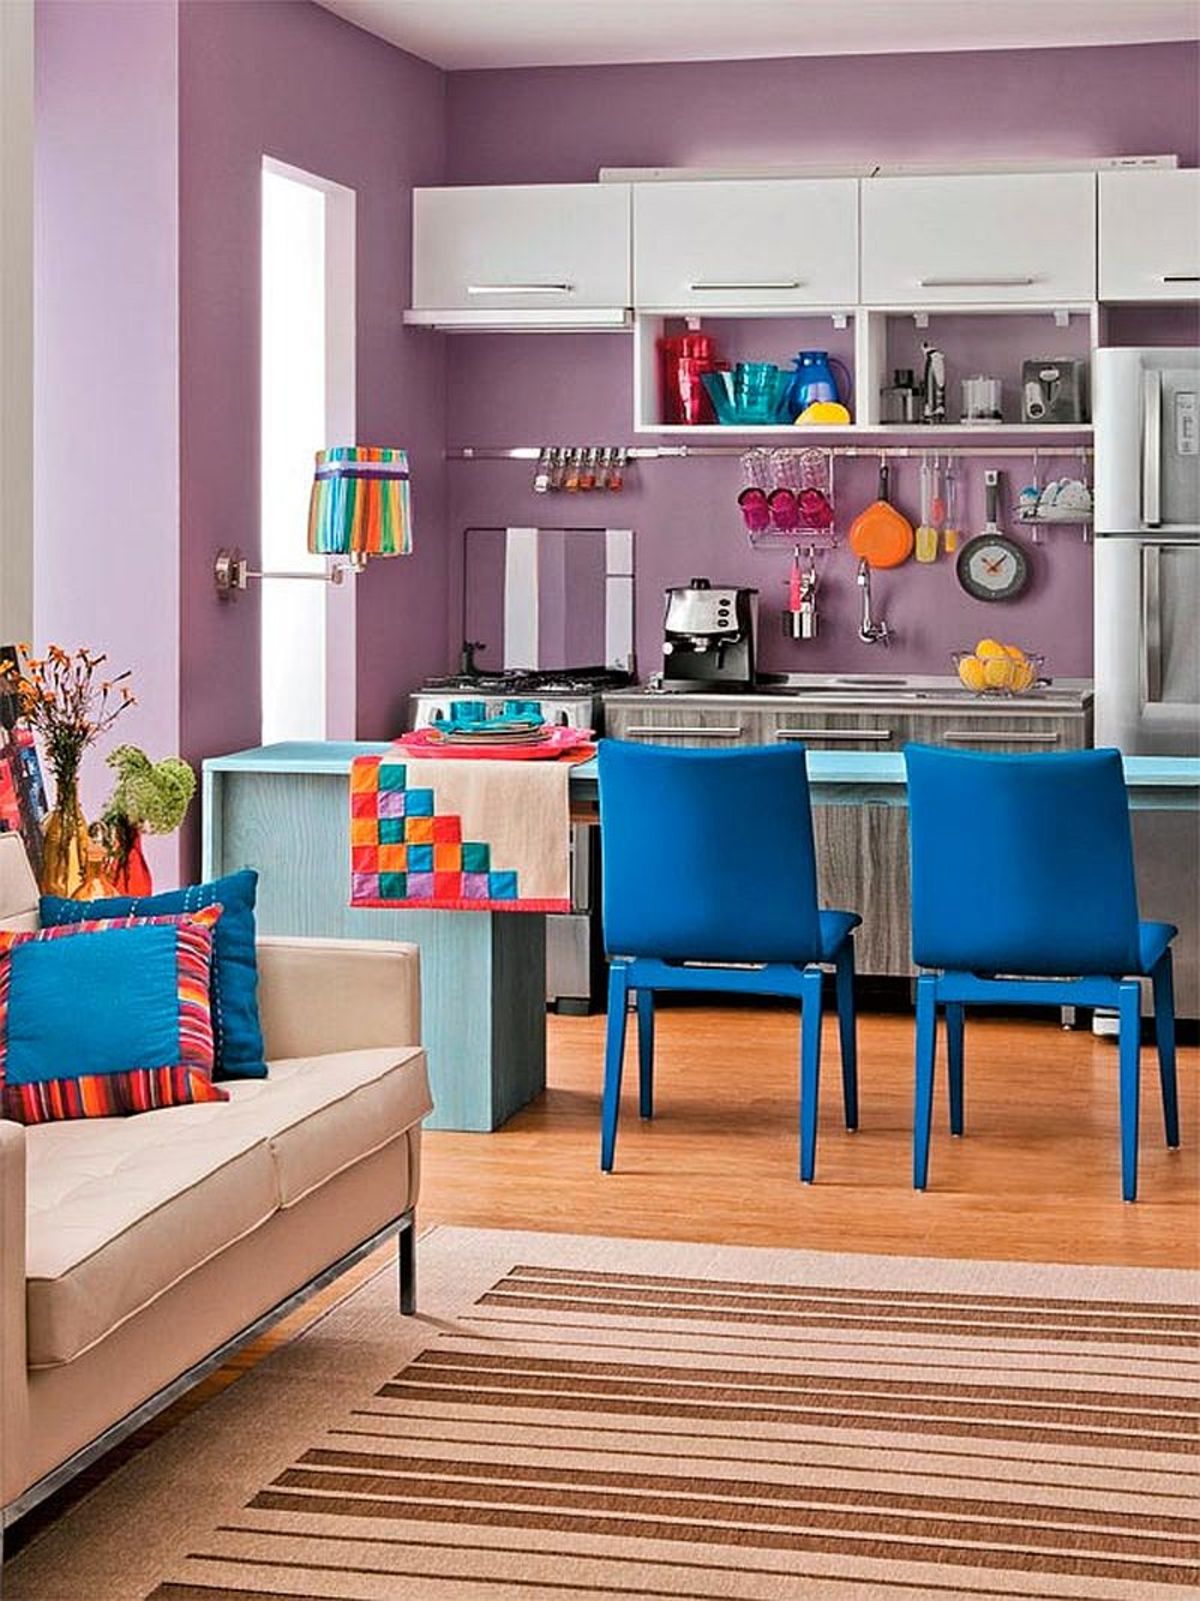 Какой цвет сочетается с синим в интерьере кухни фото